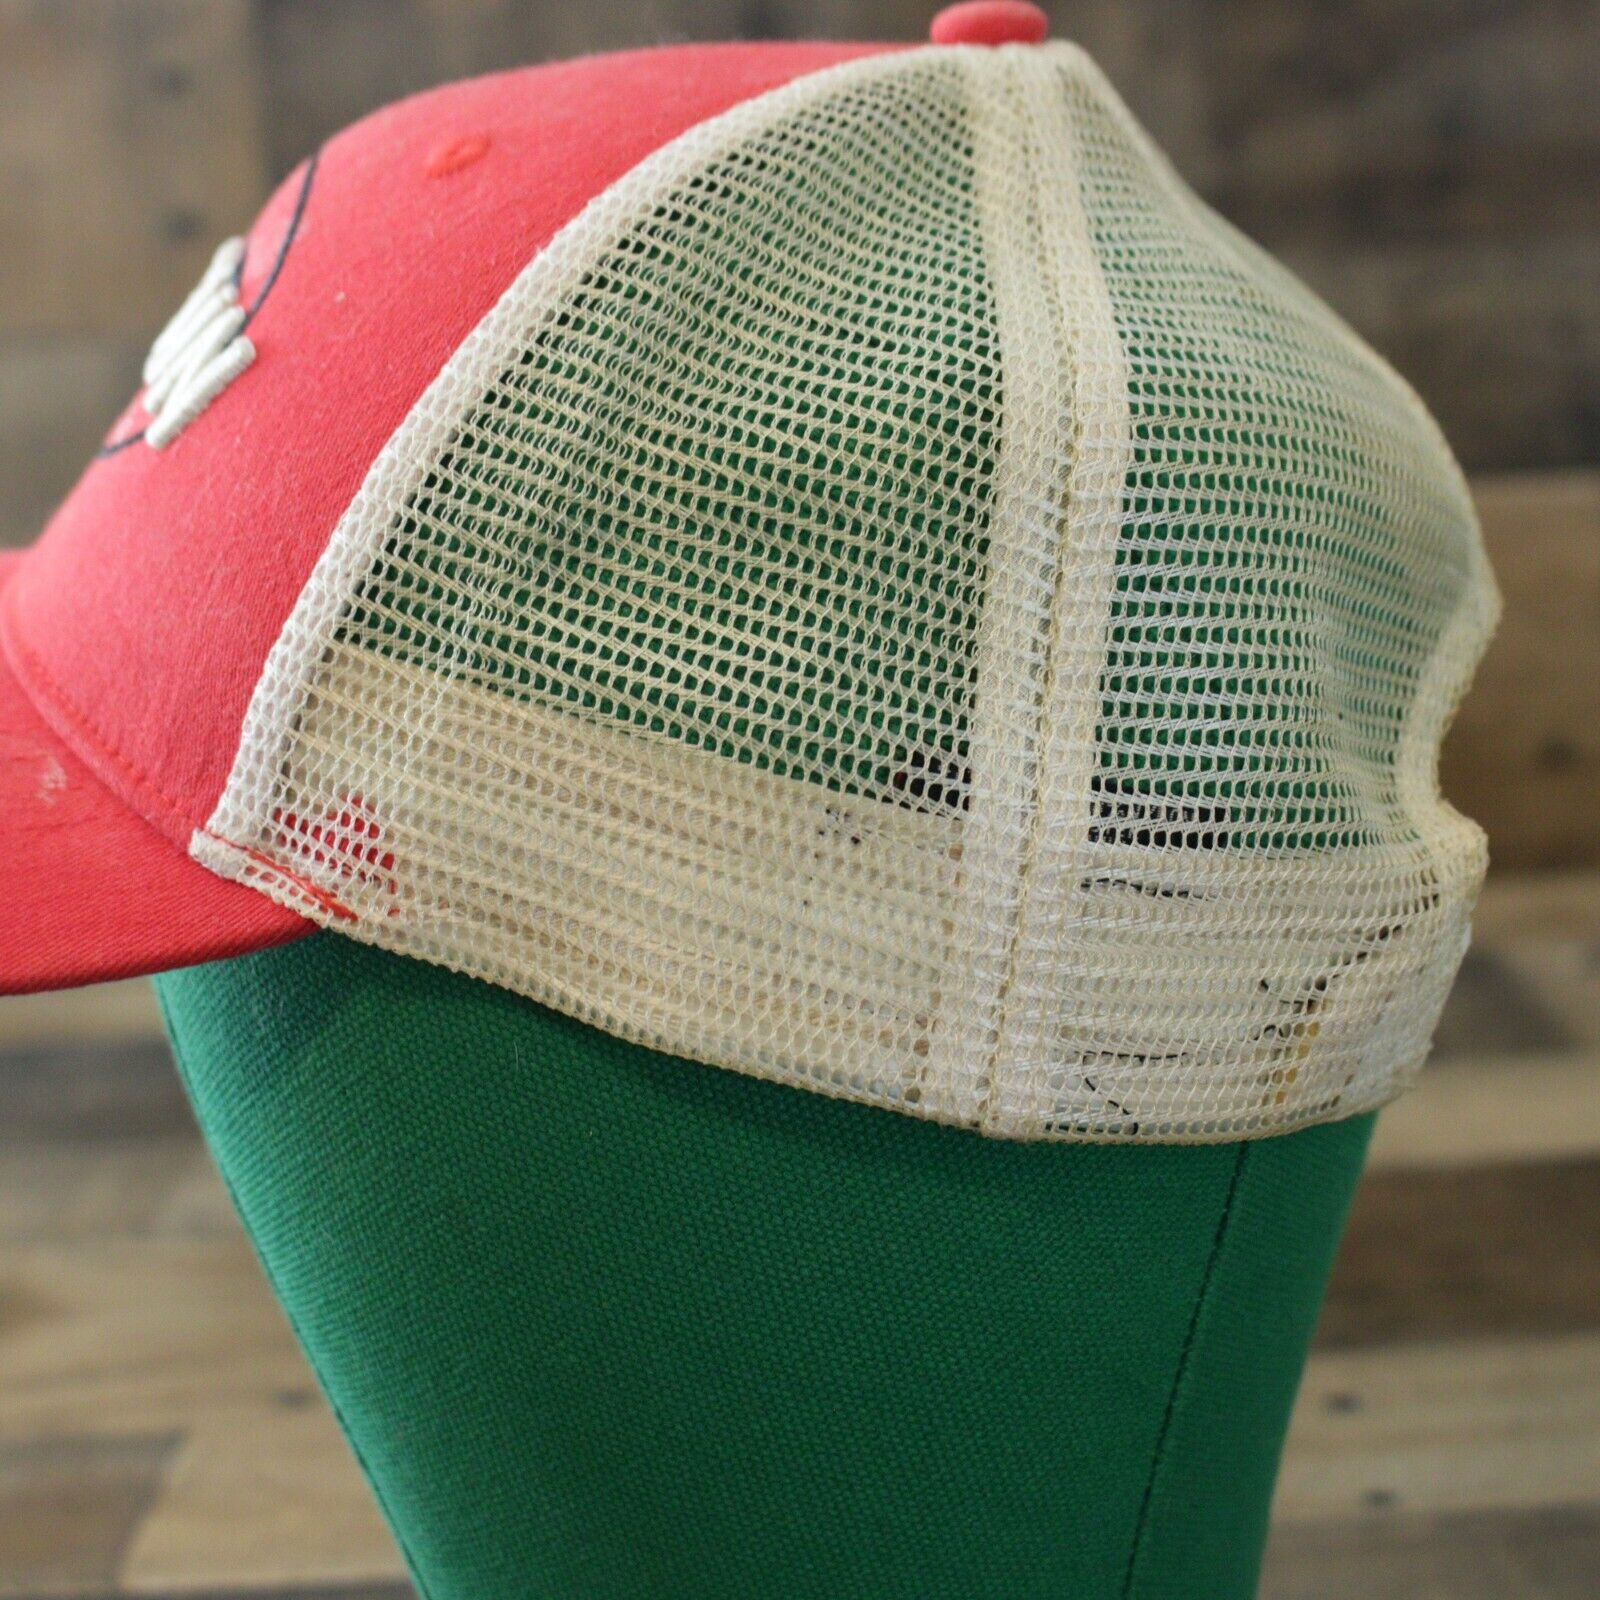 Top Gun Trucker Hat Cap Mesh Snapback Red Adjustable | eBay